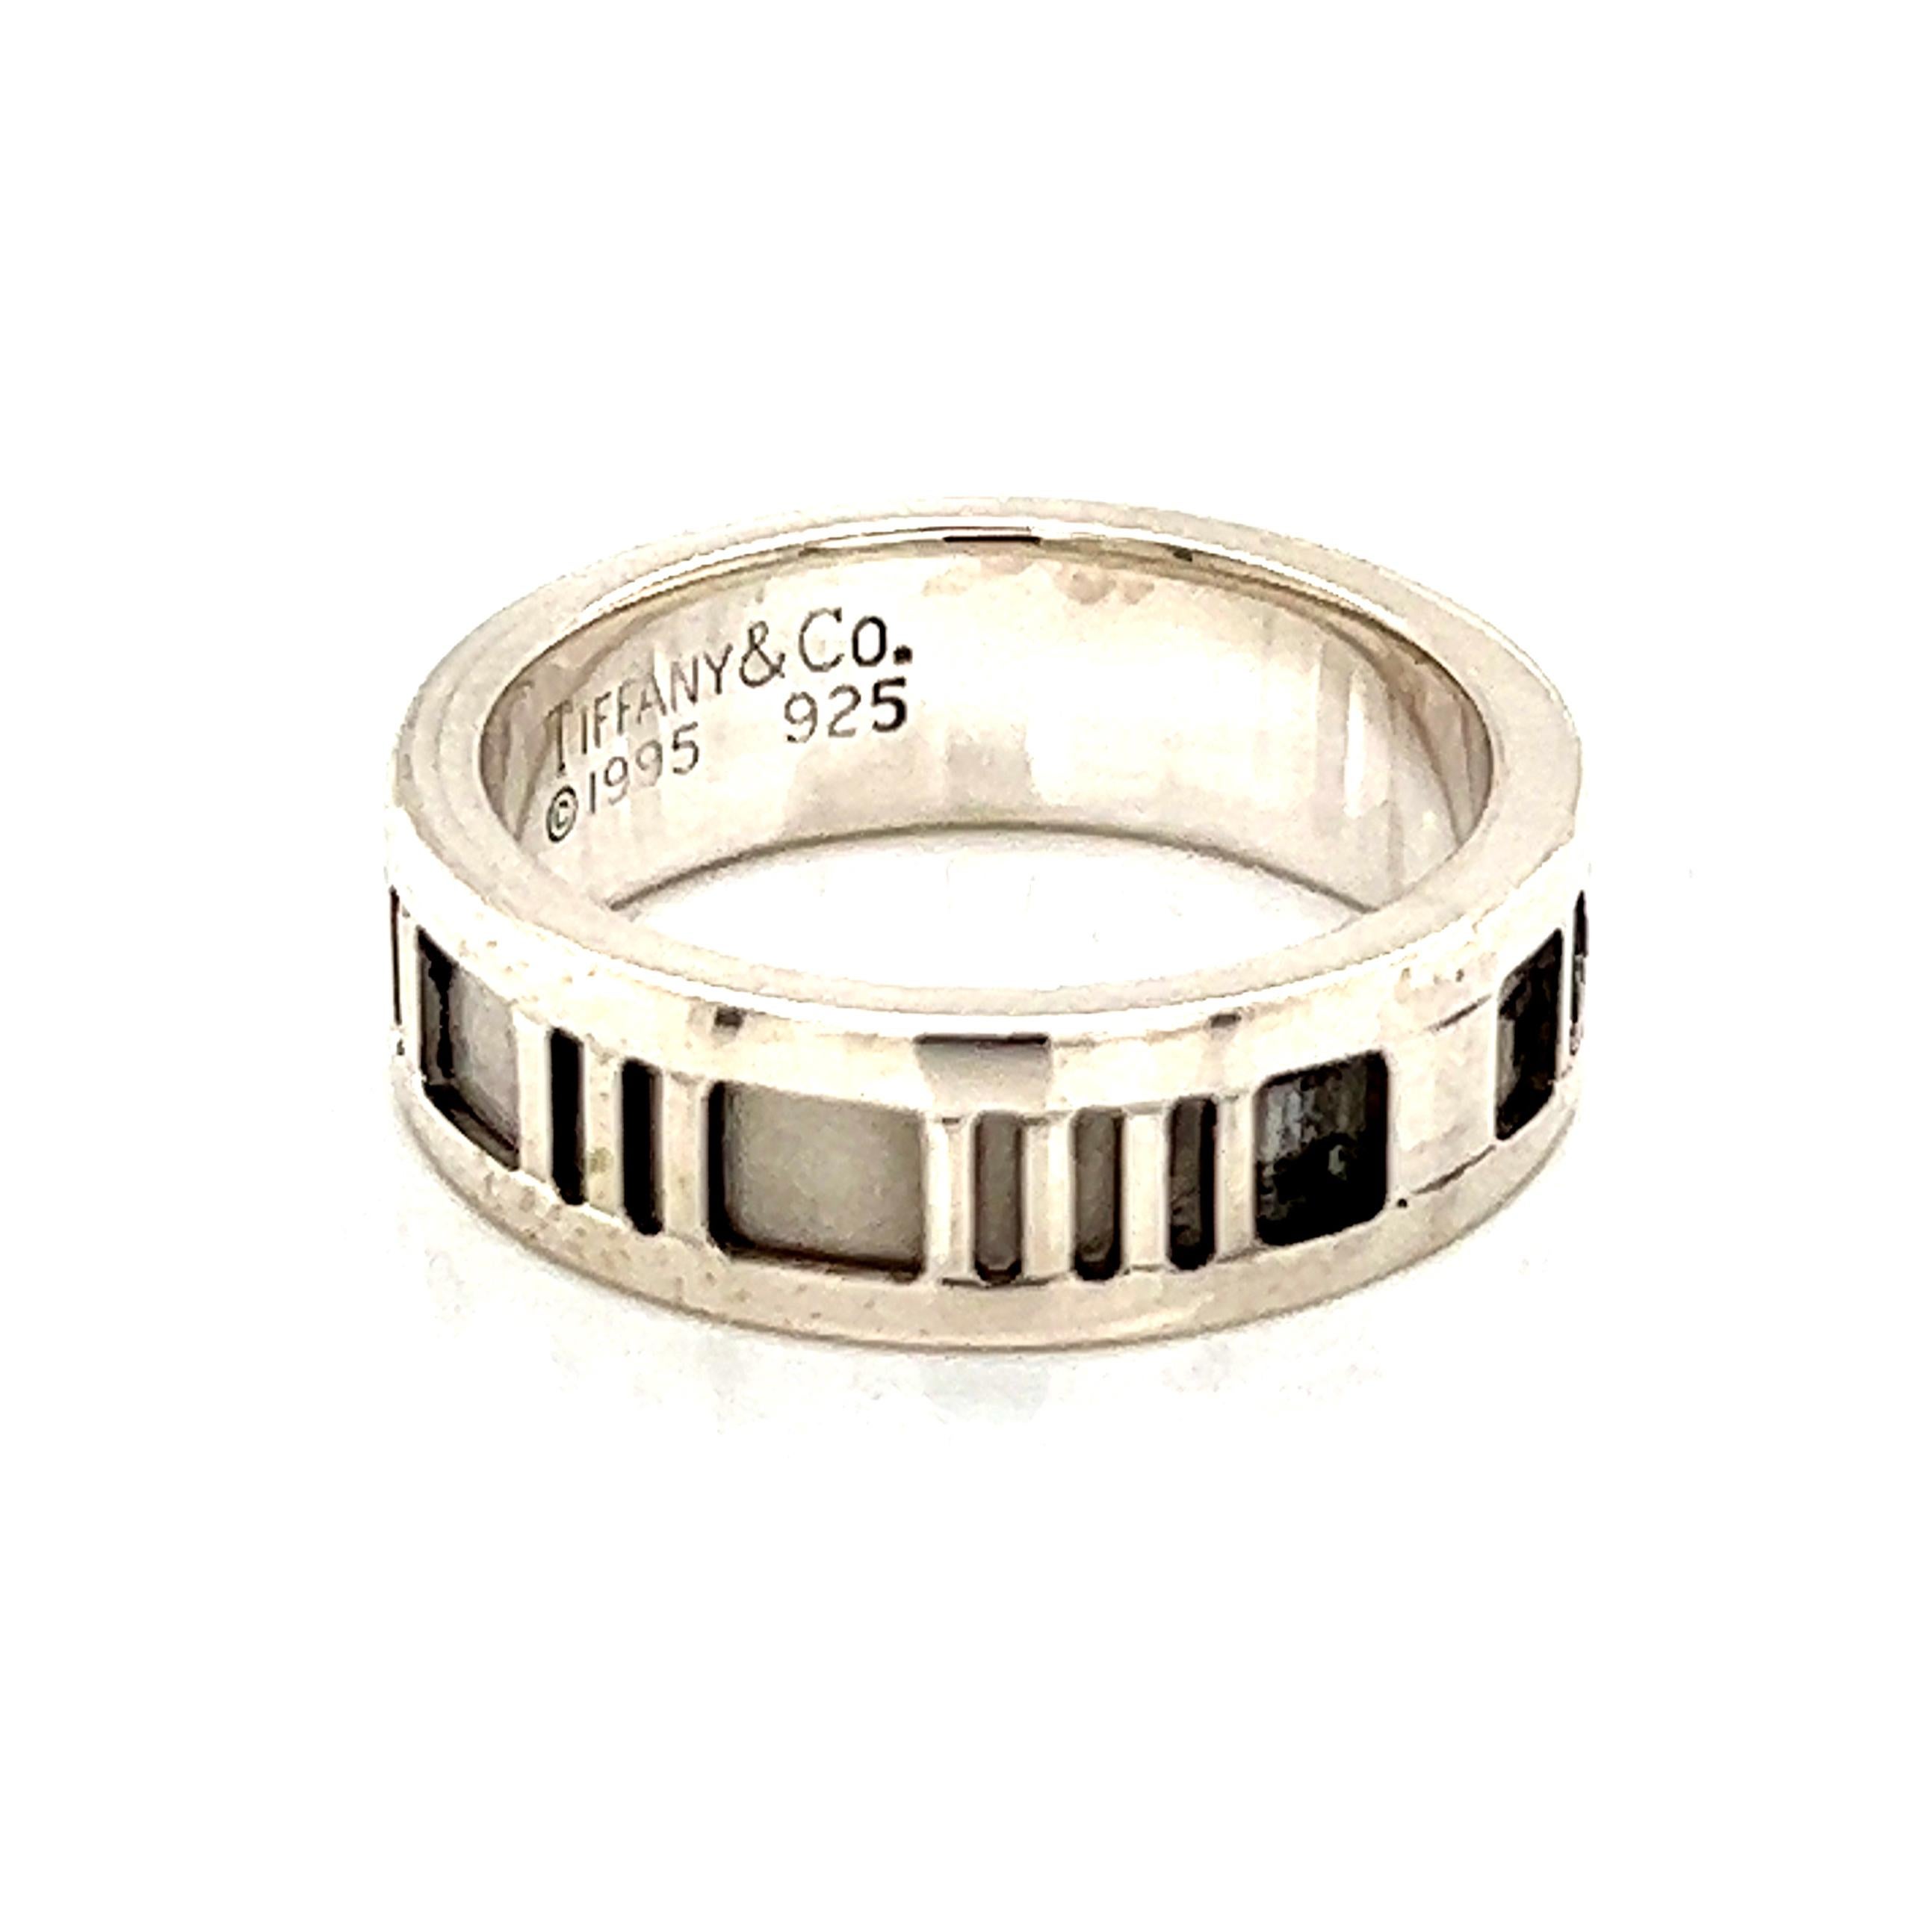 Tiffany & Co Estate Sterling Silber Ring Größe 5,25, 4,9 Gramm TIF181

Bitte sehen Sie sich das beigefügte Video zu diesem Artikel an. Auf dem Video können Sie die Bewegung des Objekts sehen und die Facetten und Details besser erkennen.
